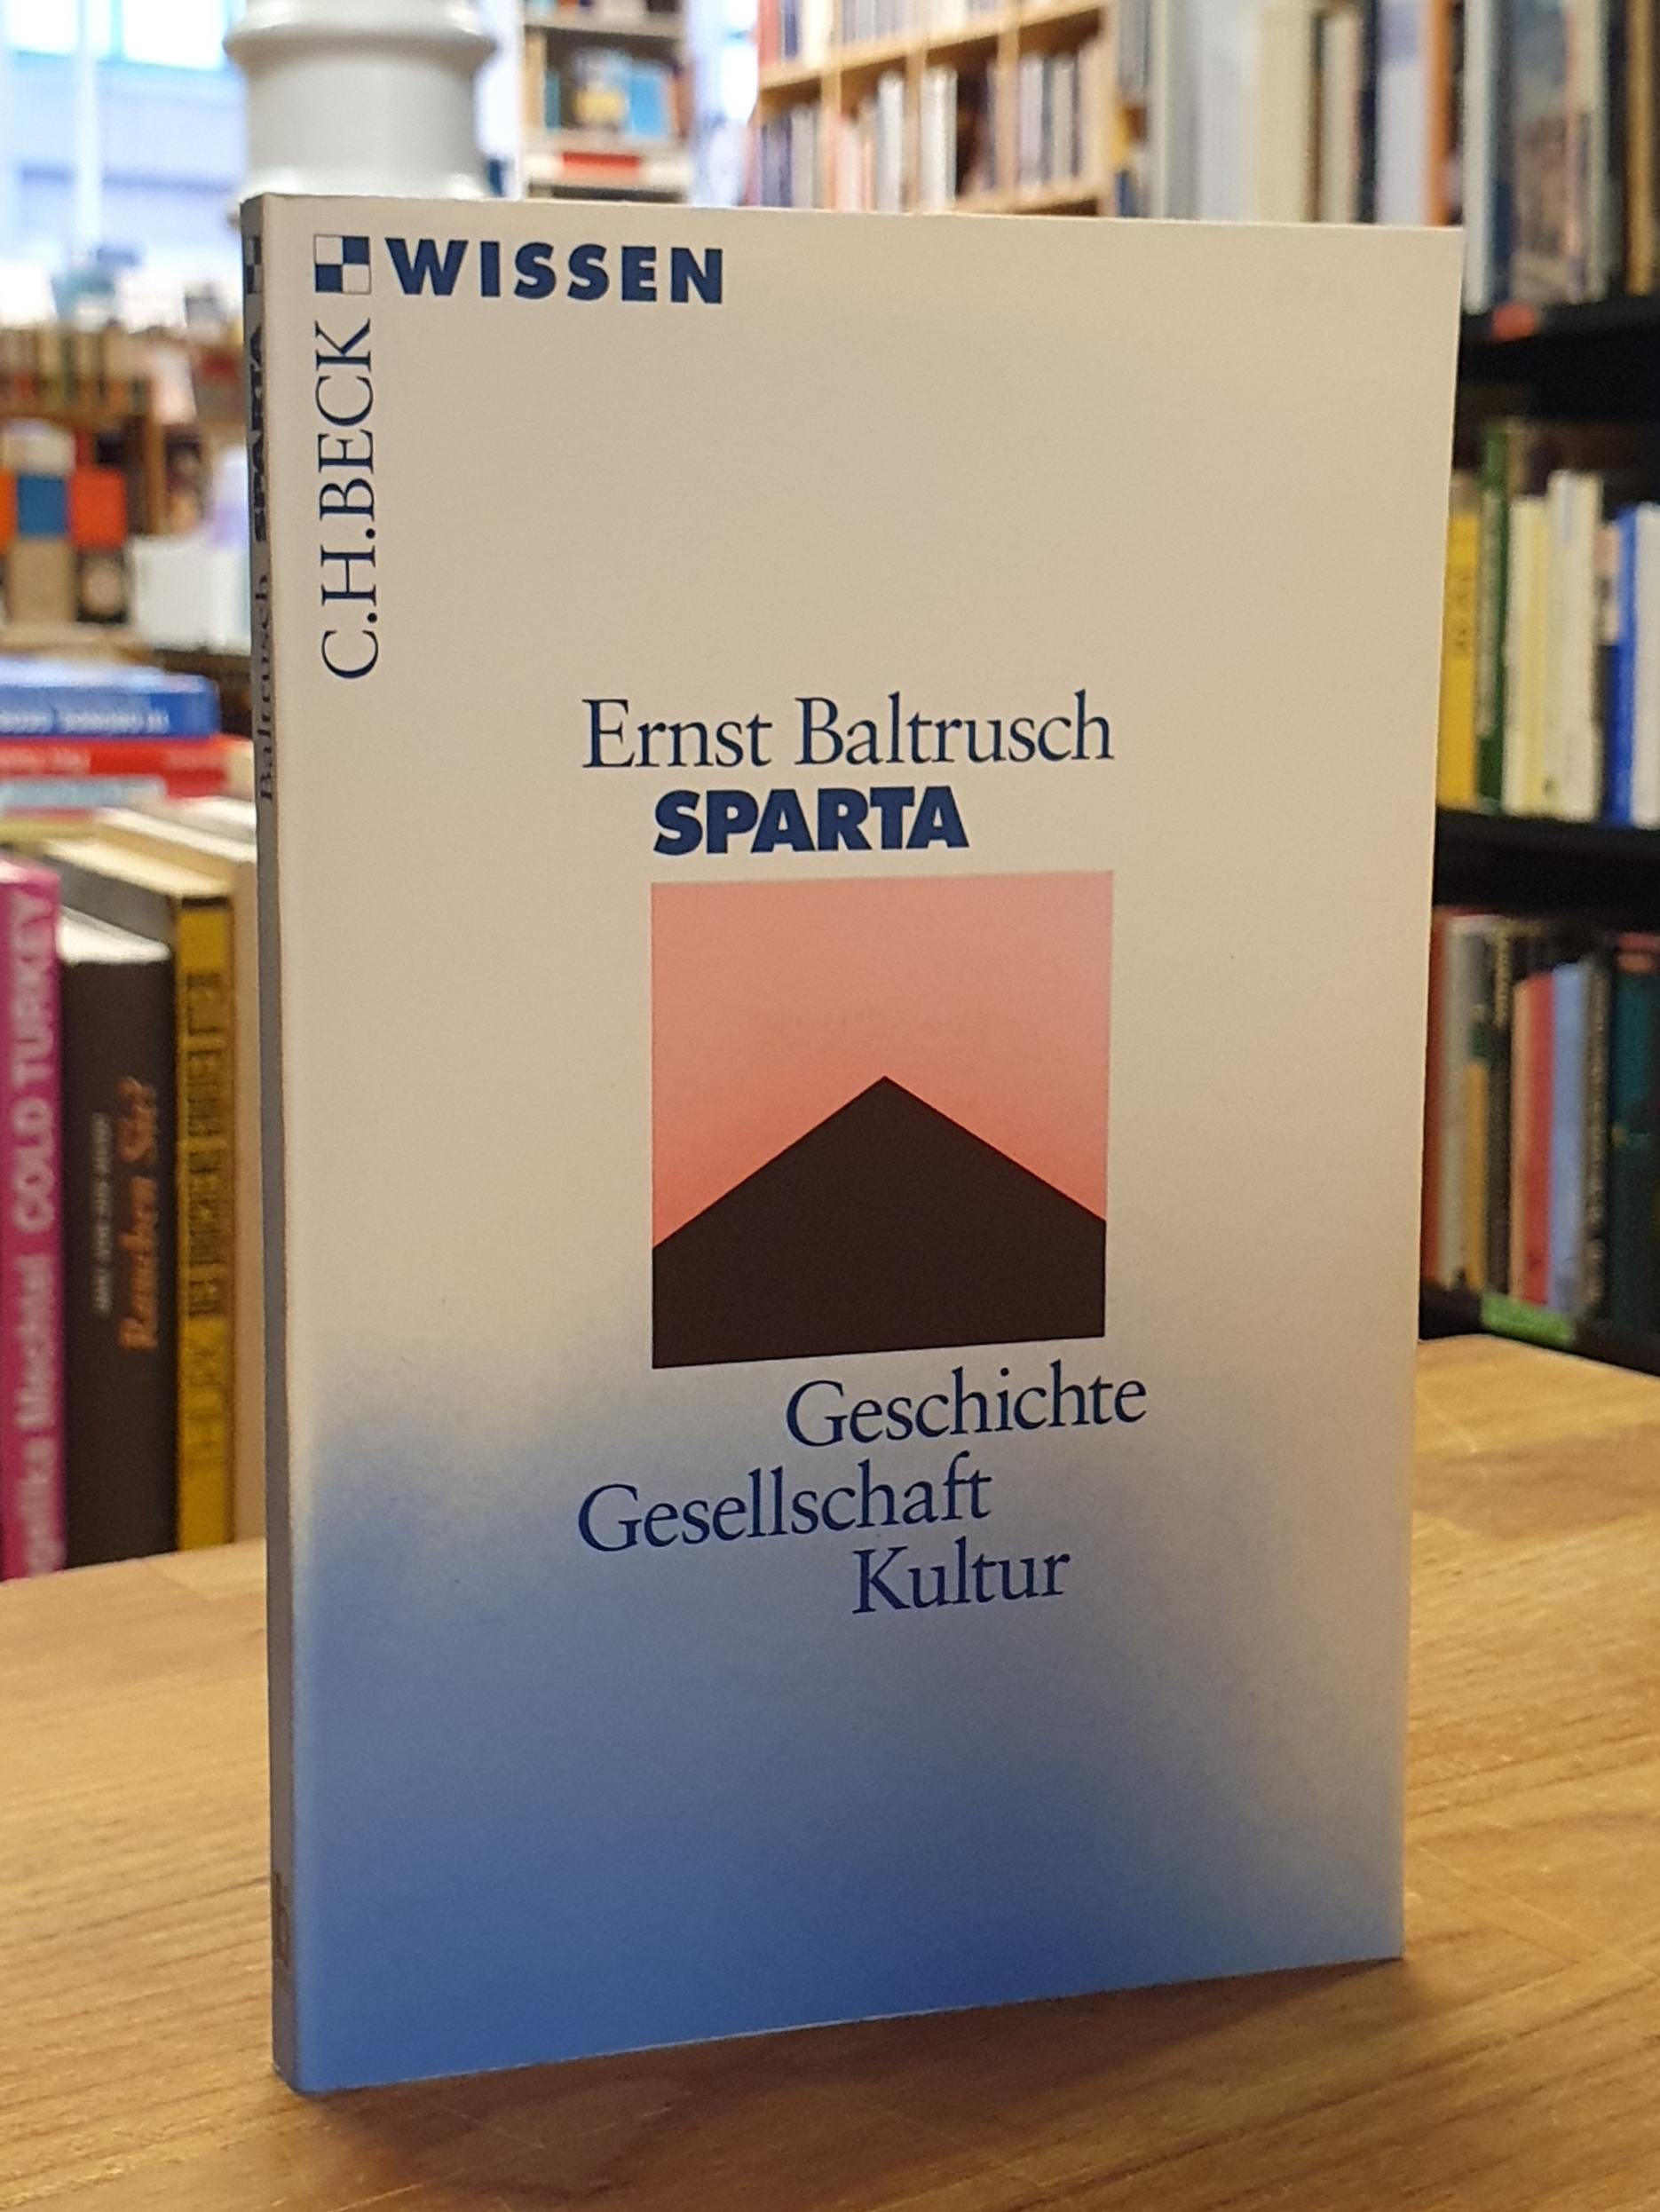 Baltrusch, Sparta – Geschichte, Gesellschaft, Kultur,